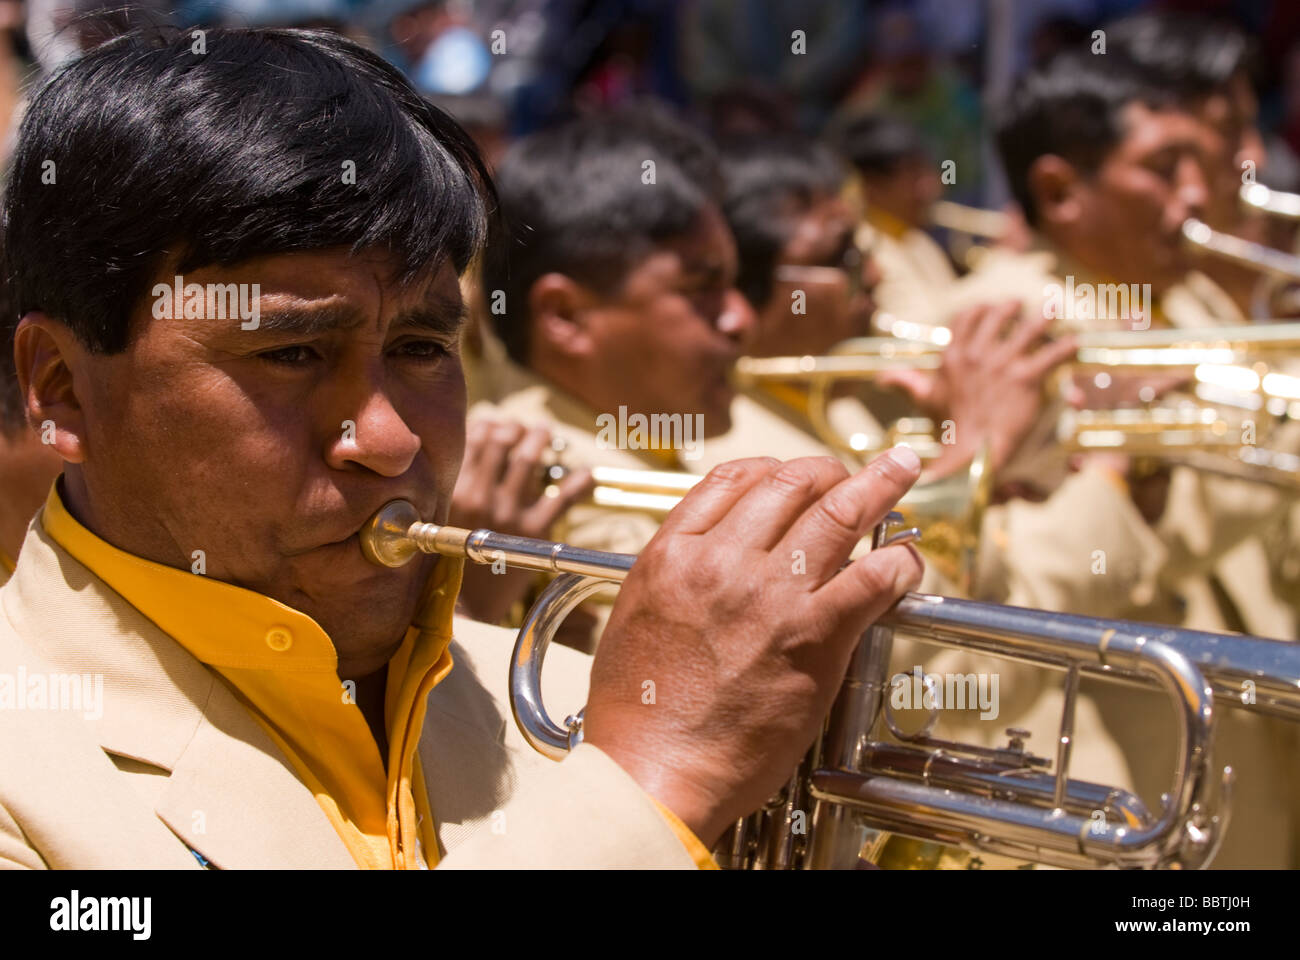 Music Band al carnevale di Oruro, Bolivia Foto Stock